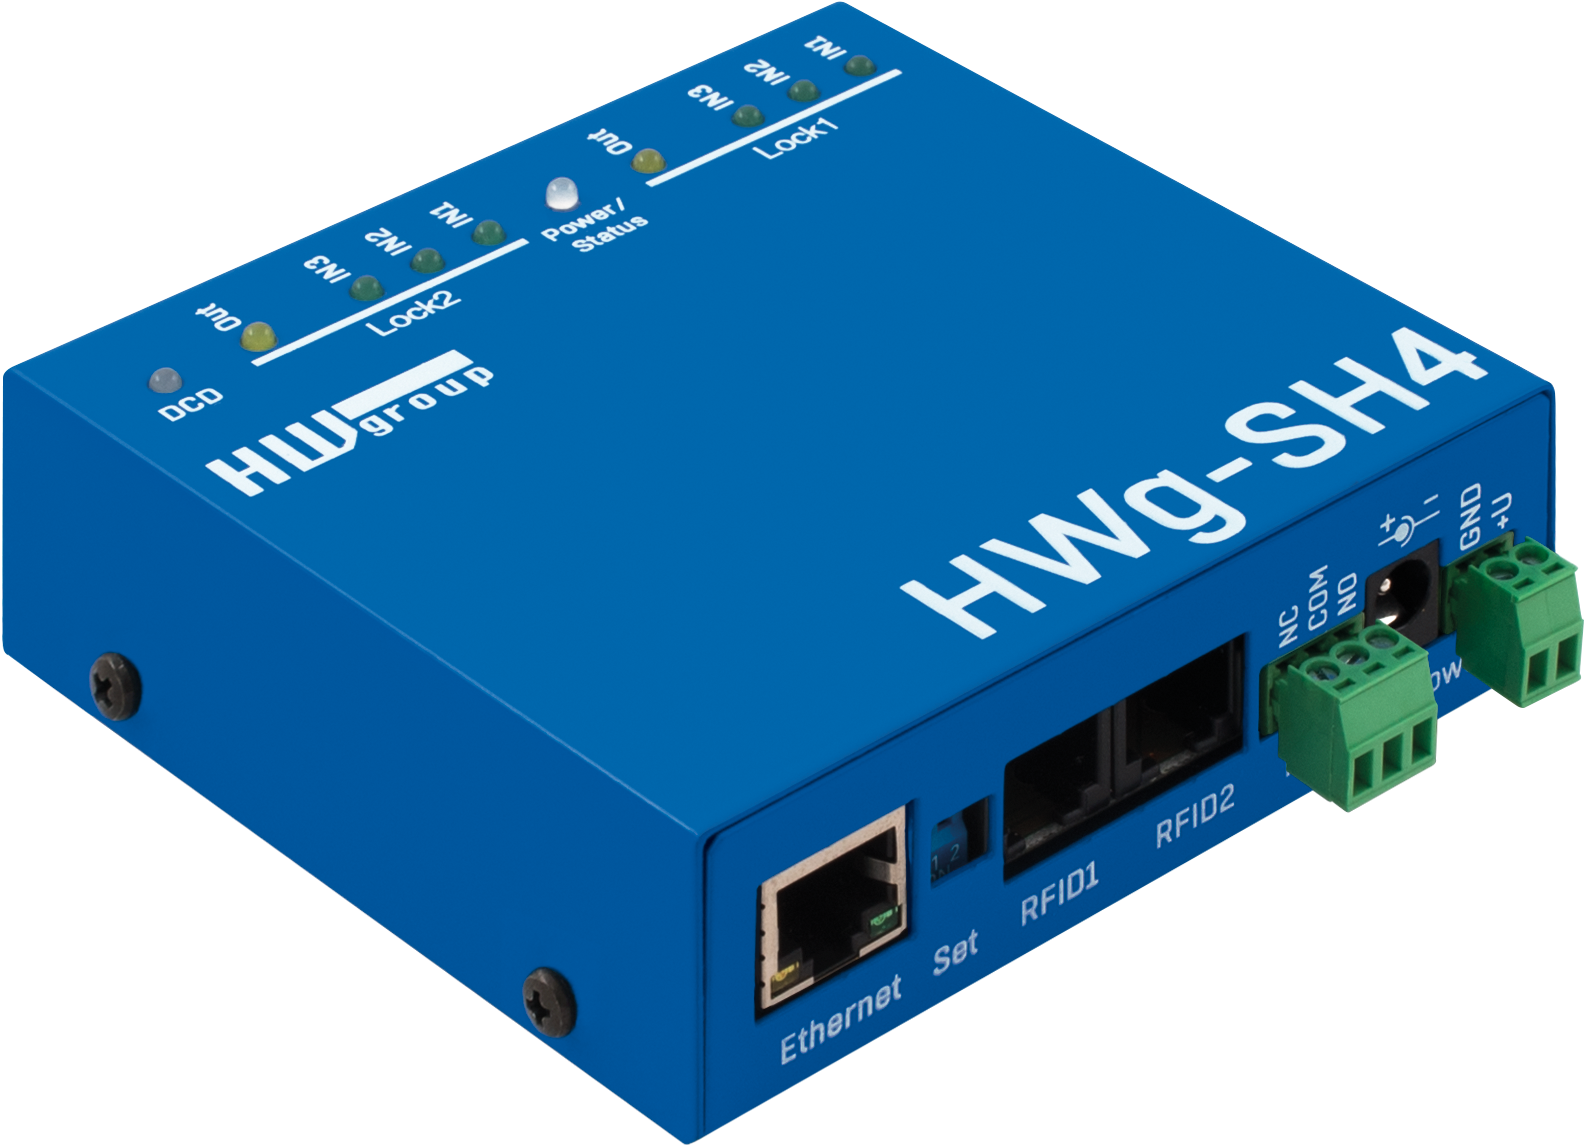 HW group HWg-SH4 Series System